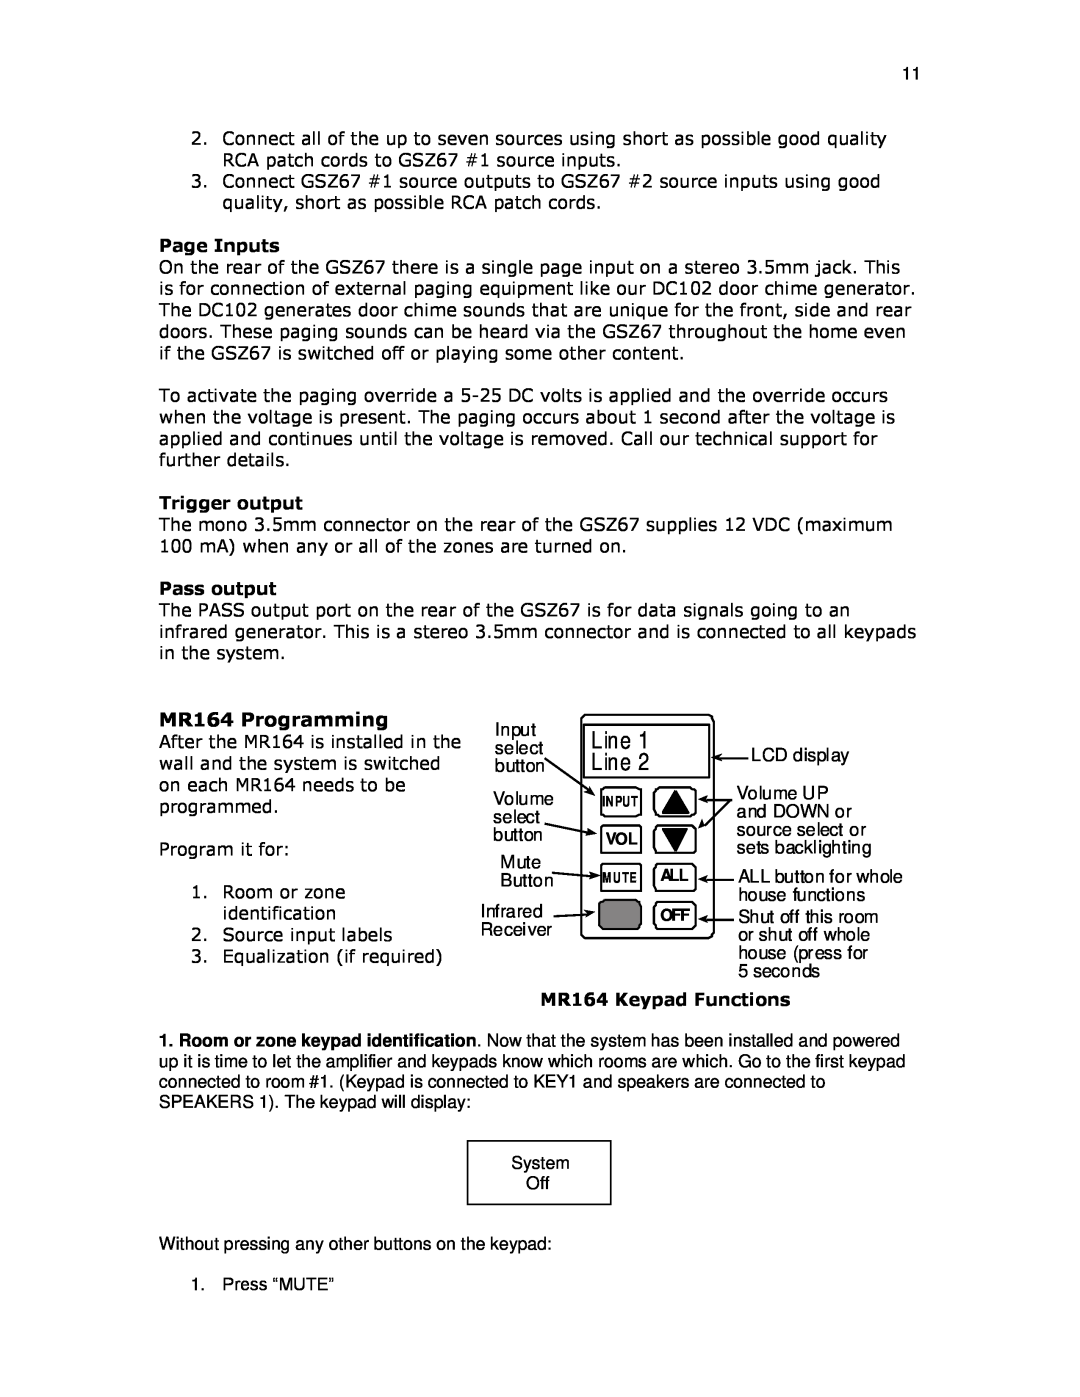 Knoll GSZ67 installation instructions MR164 Programming, Line 